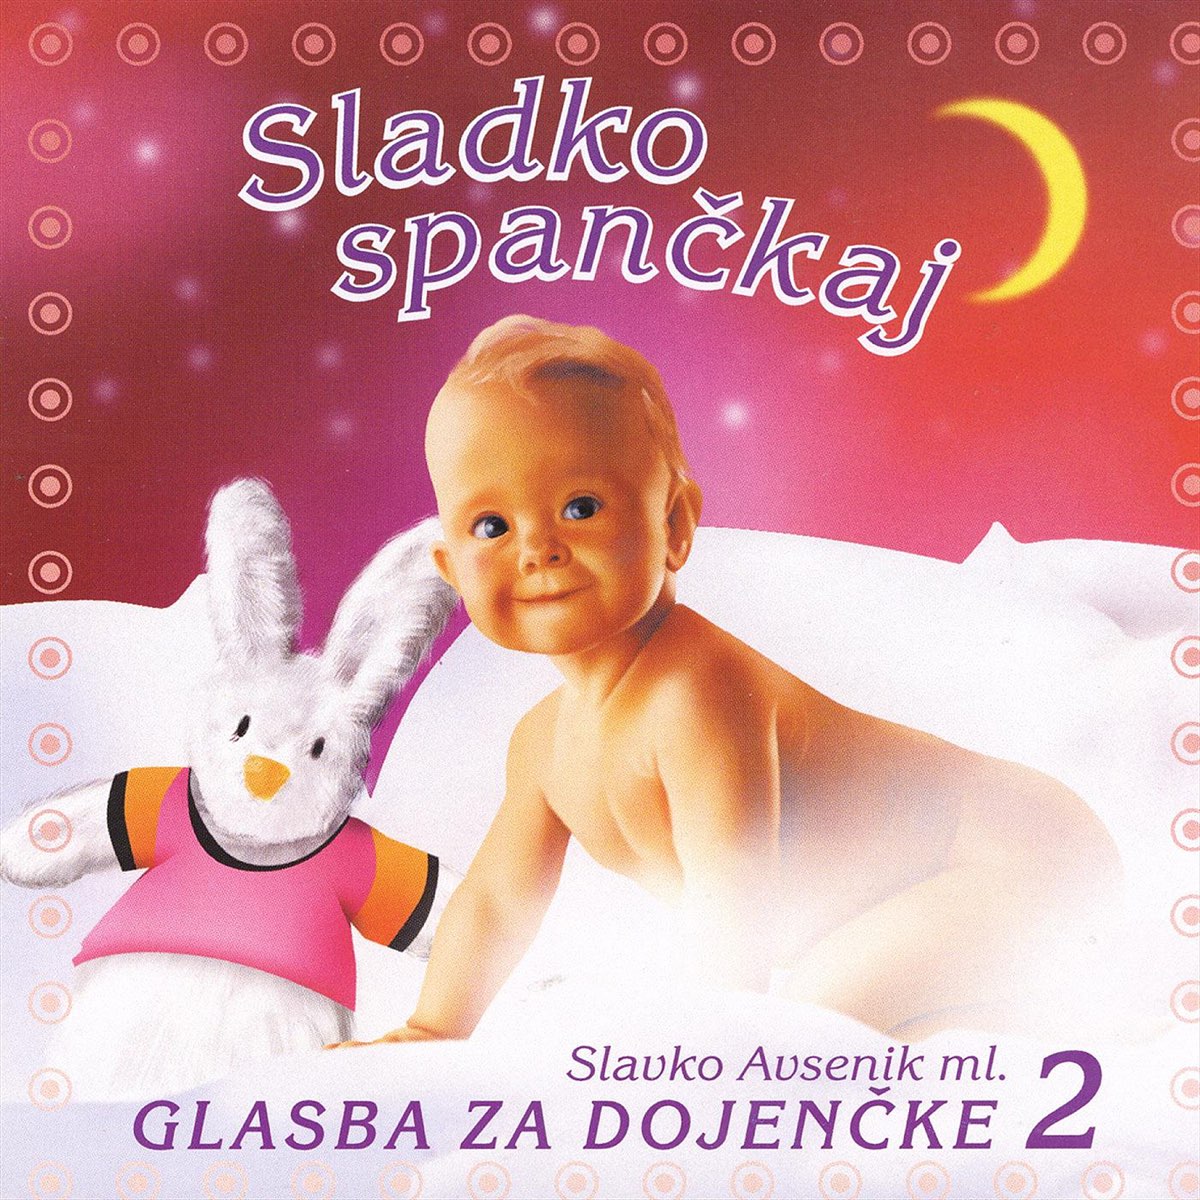 Sladko spančkaj 2: Glasba za dojenčke - Album by Slavko Avsenik Ml - Apple  Music